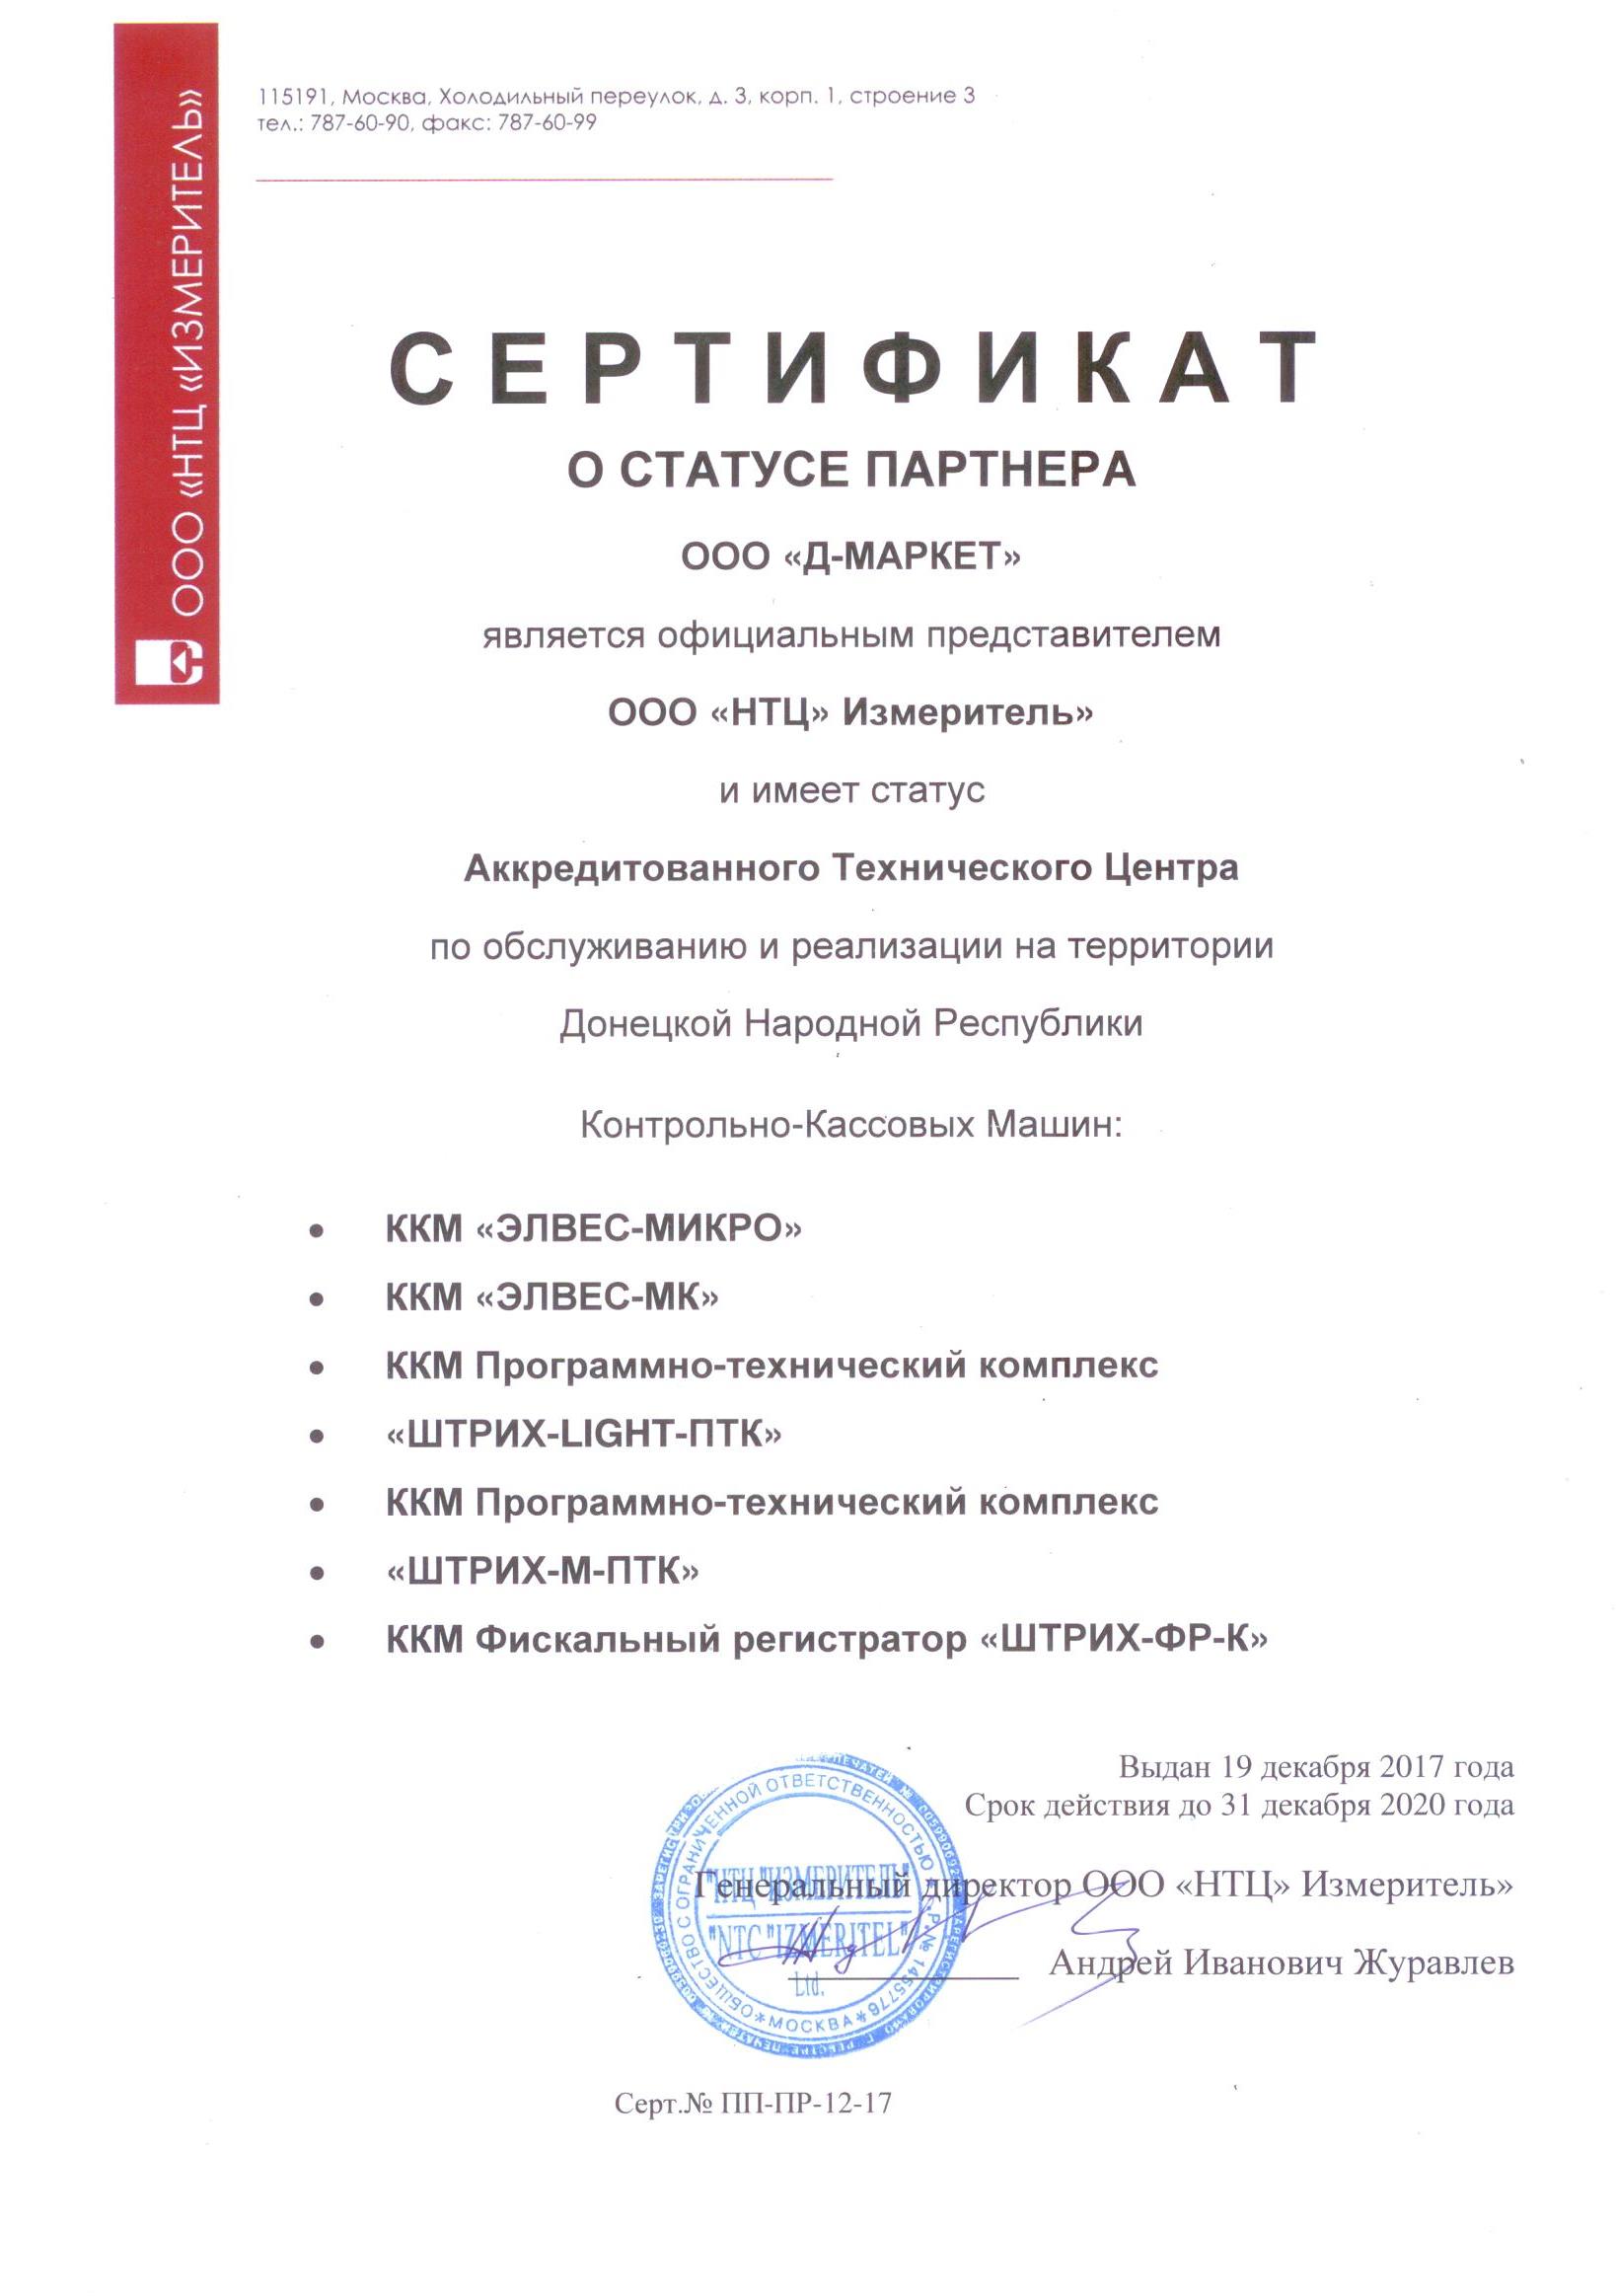 Сертификат Штрих